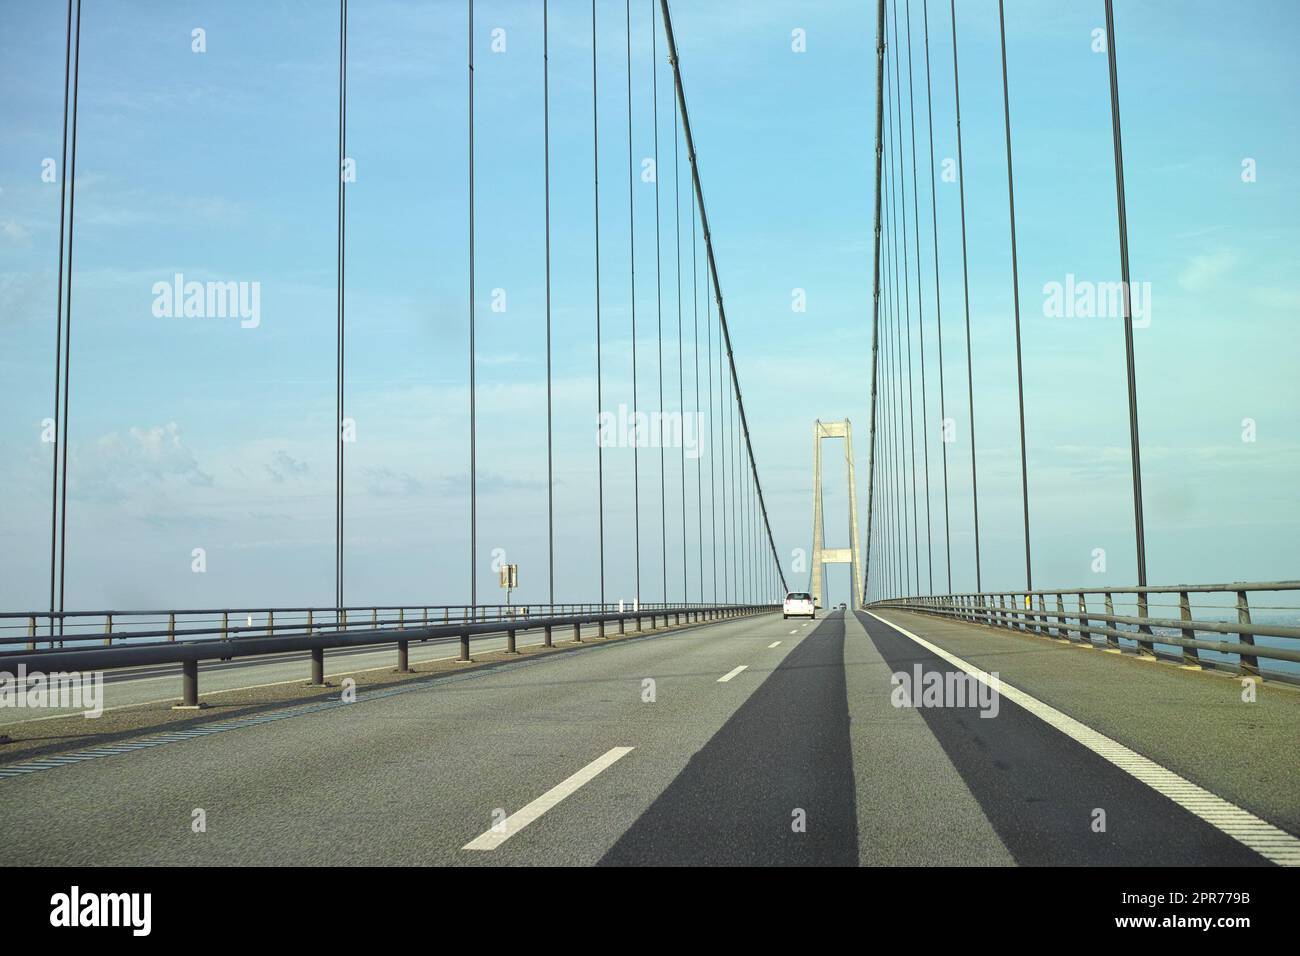 Storebaelt-Hängebrücke in Dänemark vor blauem Himmelshintergrund. Überführung von Straßenübergängen für den Transport zur Verbindung von Reisezielrouten. Infrastruktur und Architektur des berühmten Wahrzeichens Stockfoto